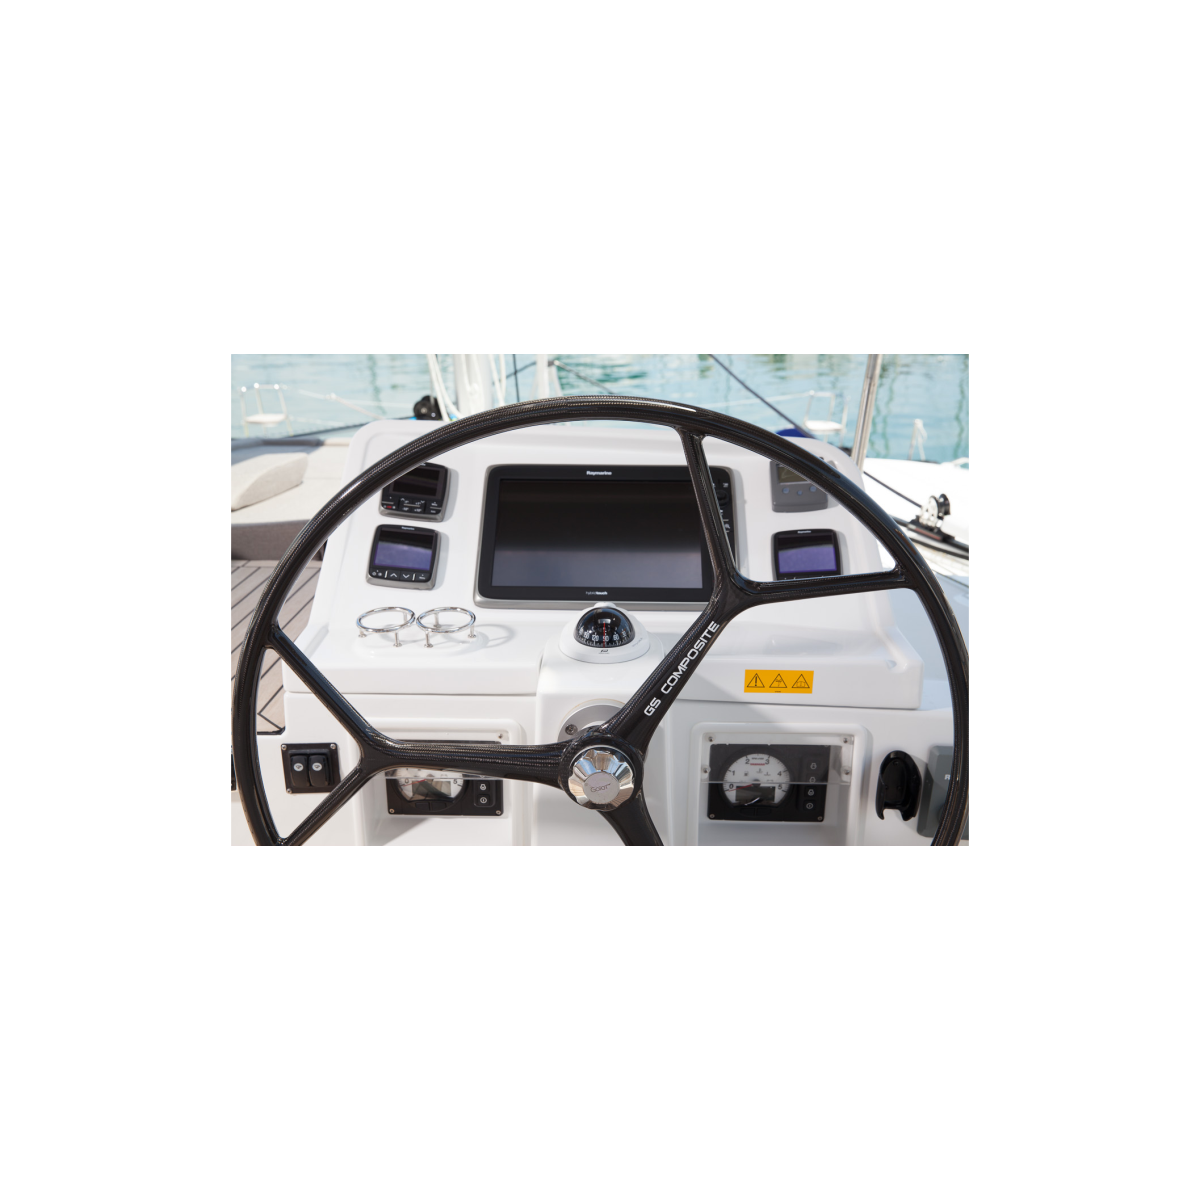 Carbon Steering Wheels, race 3-spoke model